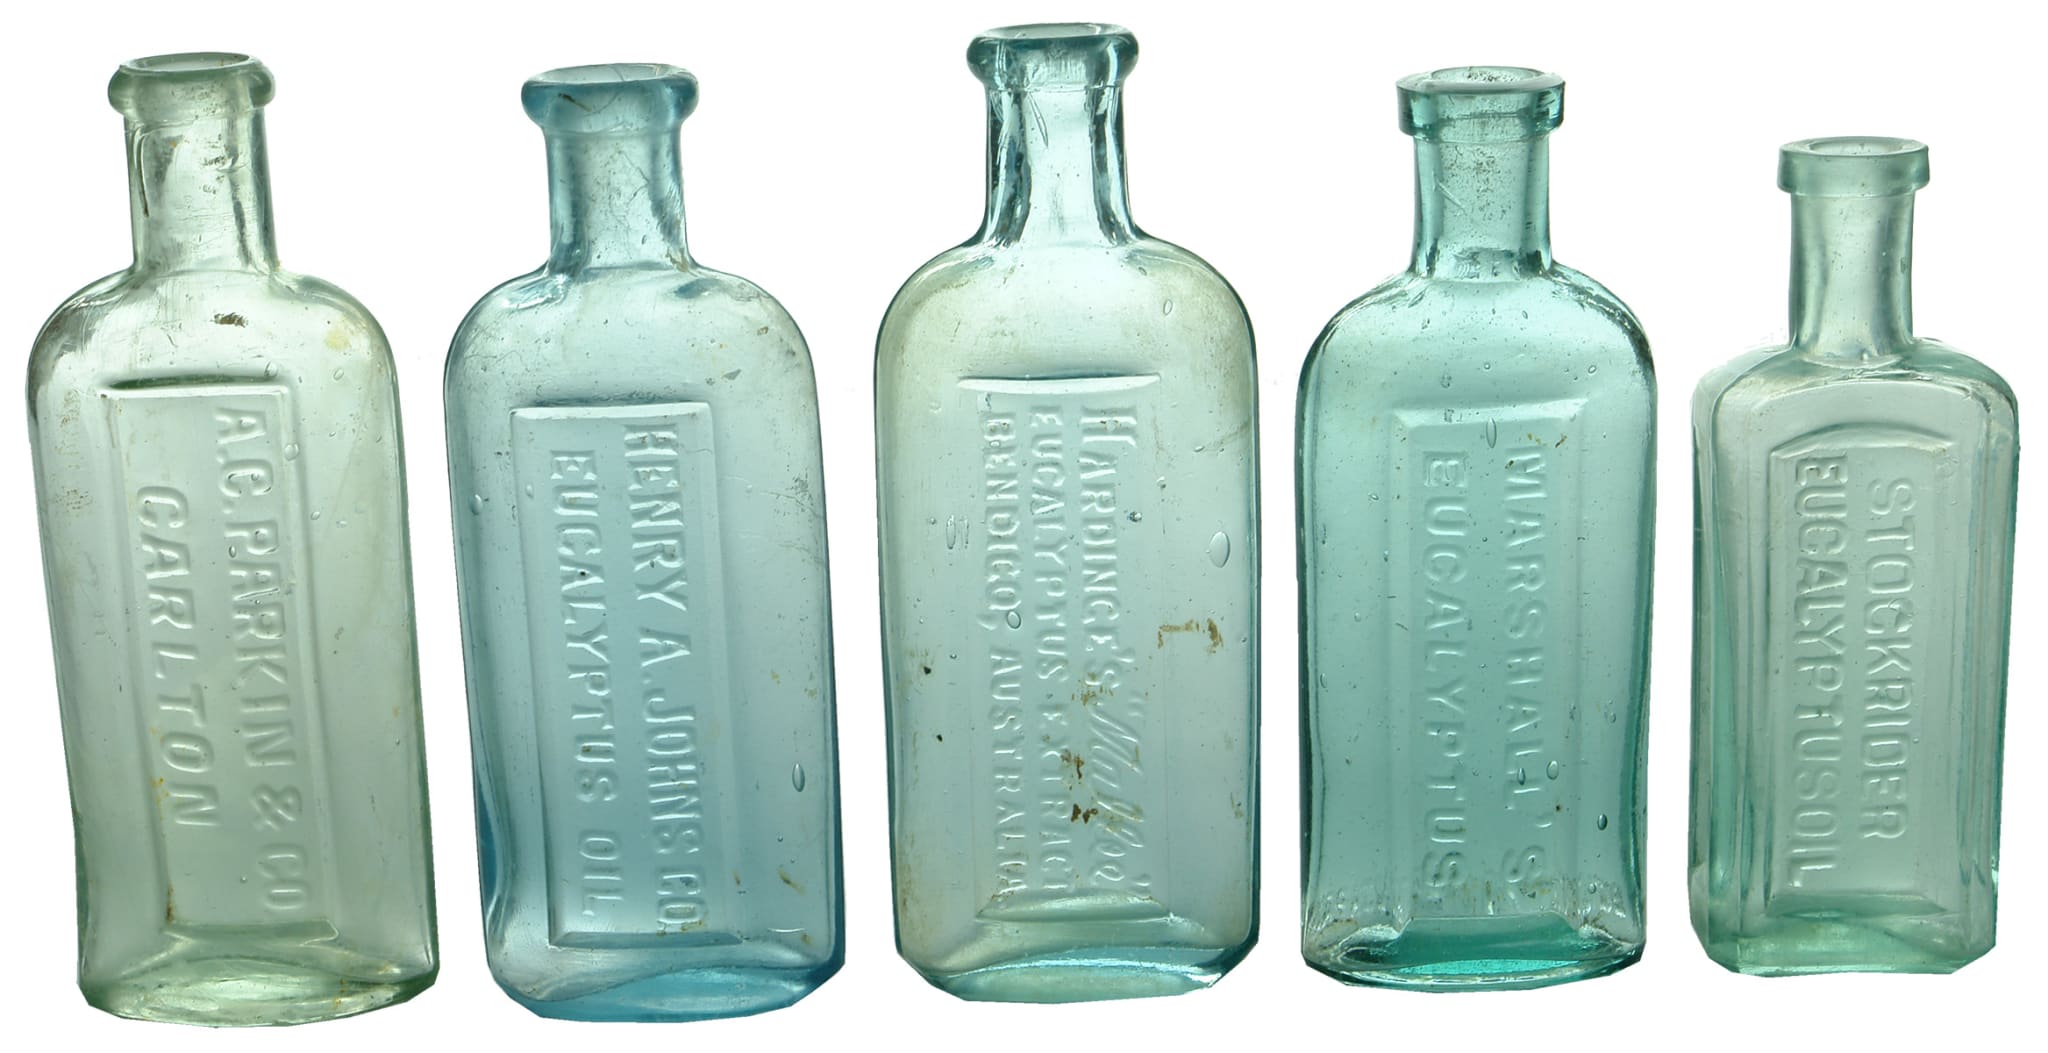 Antique Eucalyptus Oil Bottles